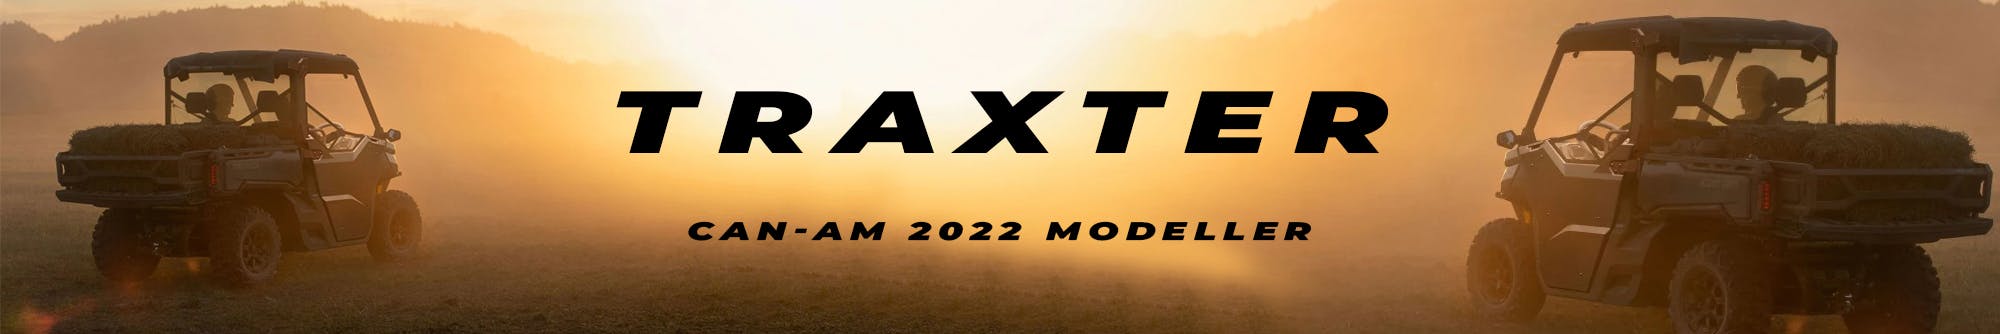 Traxter 2023 Modeller